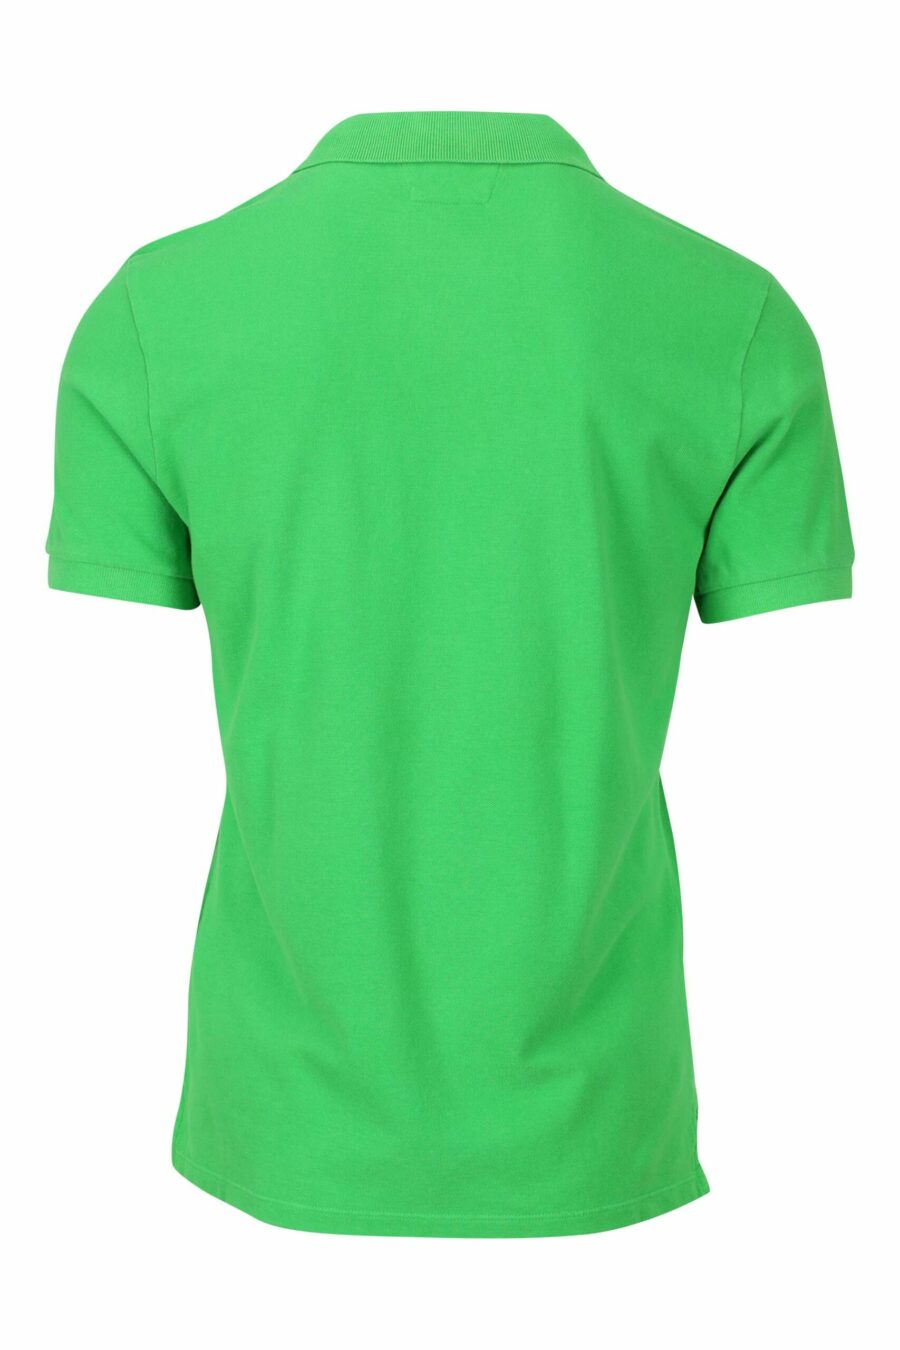 Polo vert avec mini patch logo - 7620943642308 1 1 à l'échelle